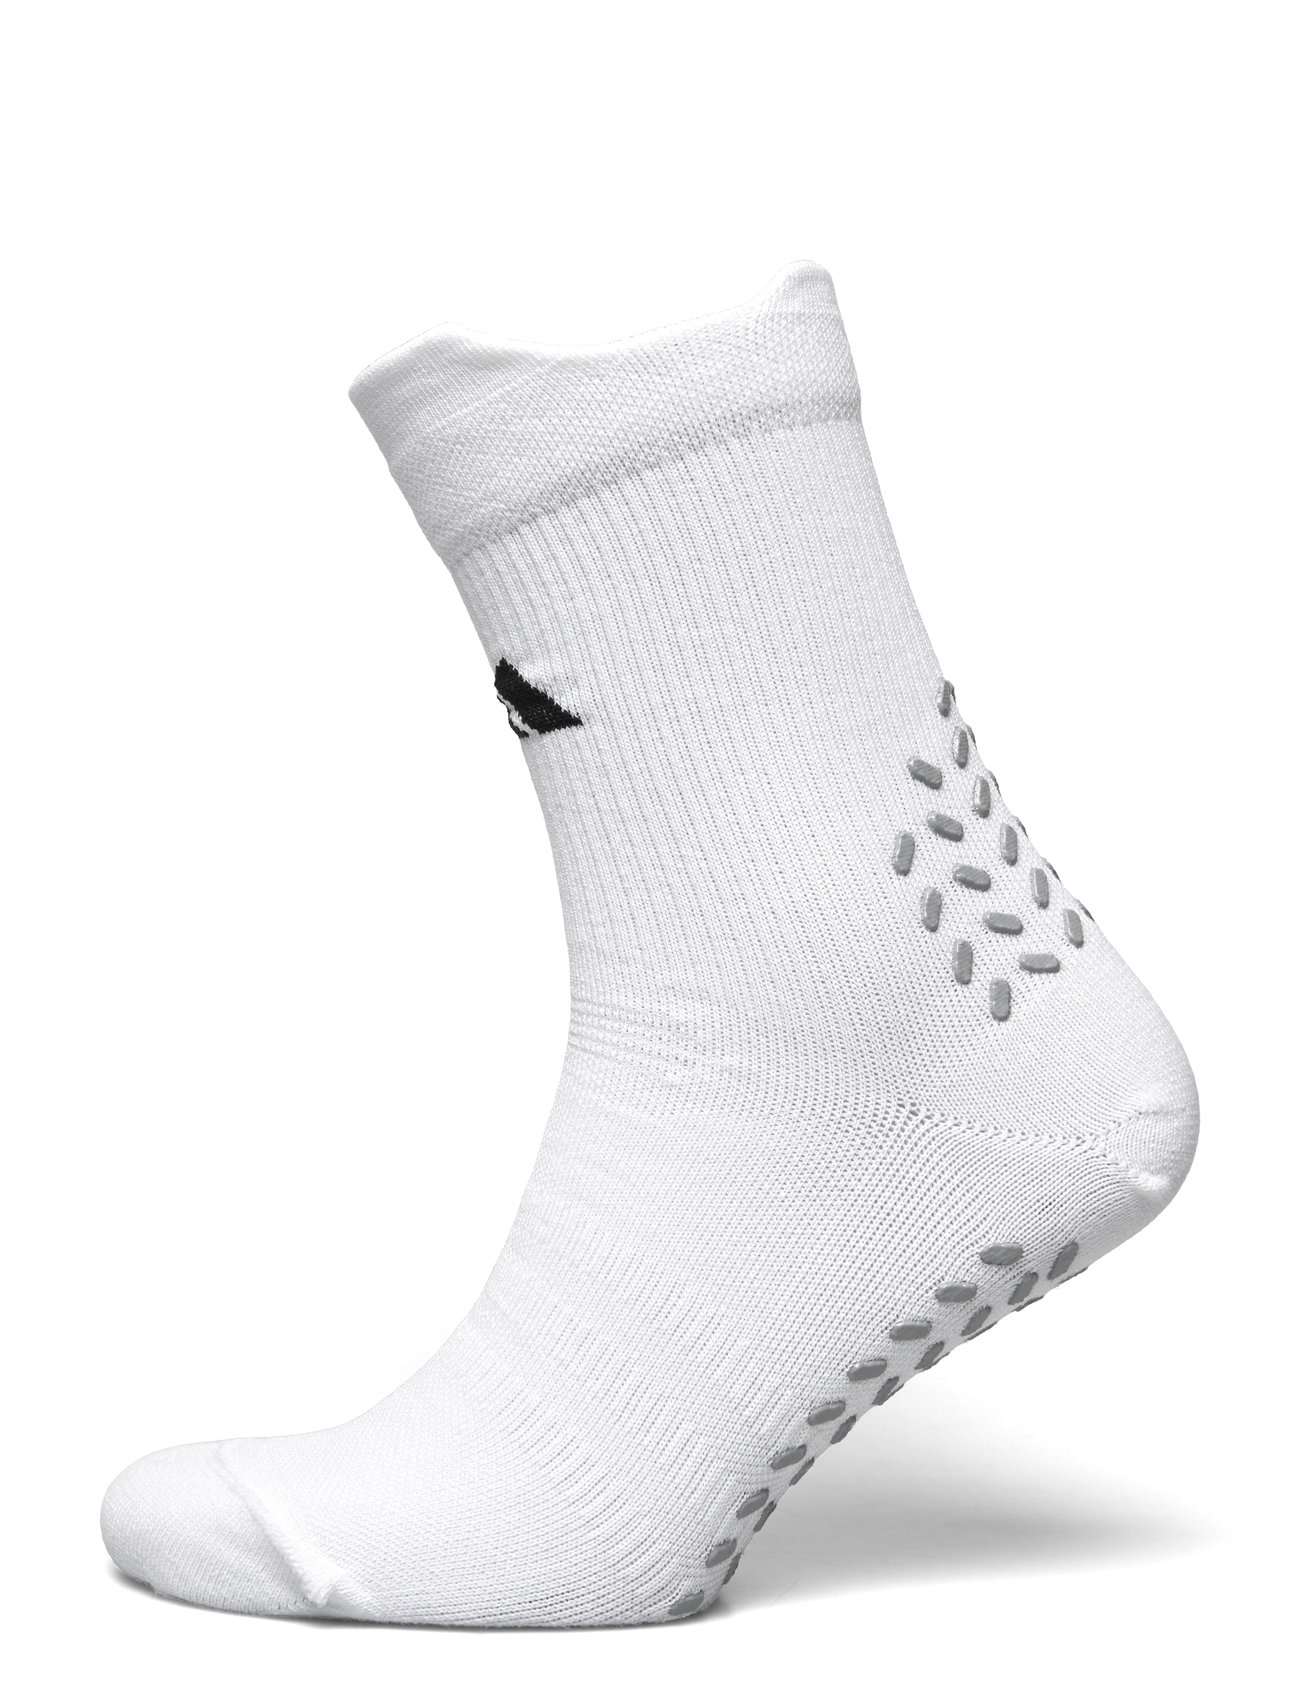 Adidas Football Grip Printed Crew Performance Socks Light Sport Socks Football Socks White Adidas Performance